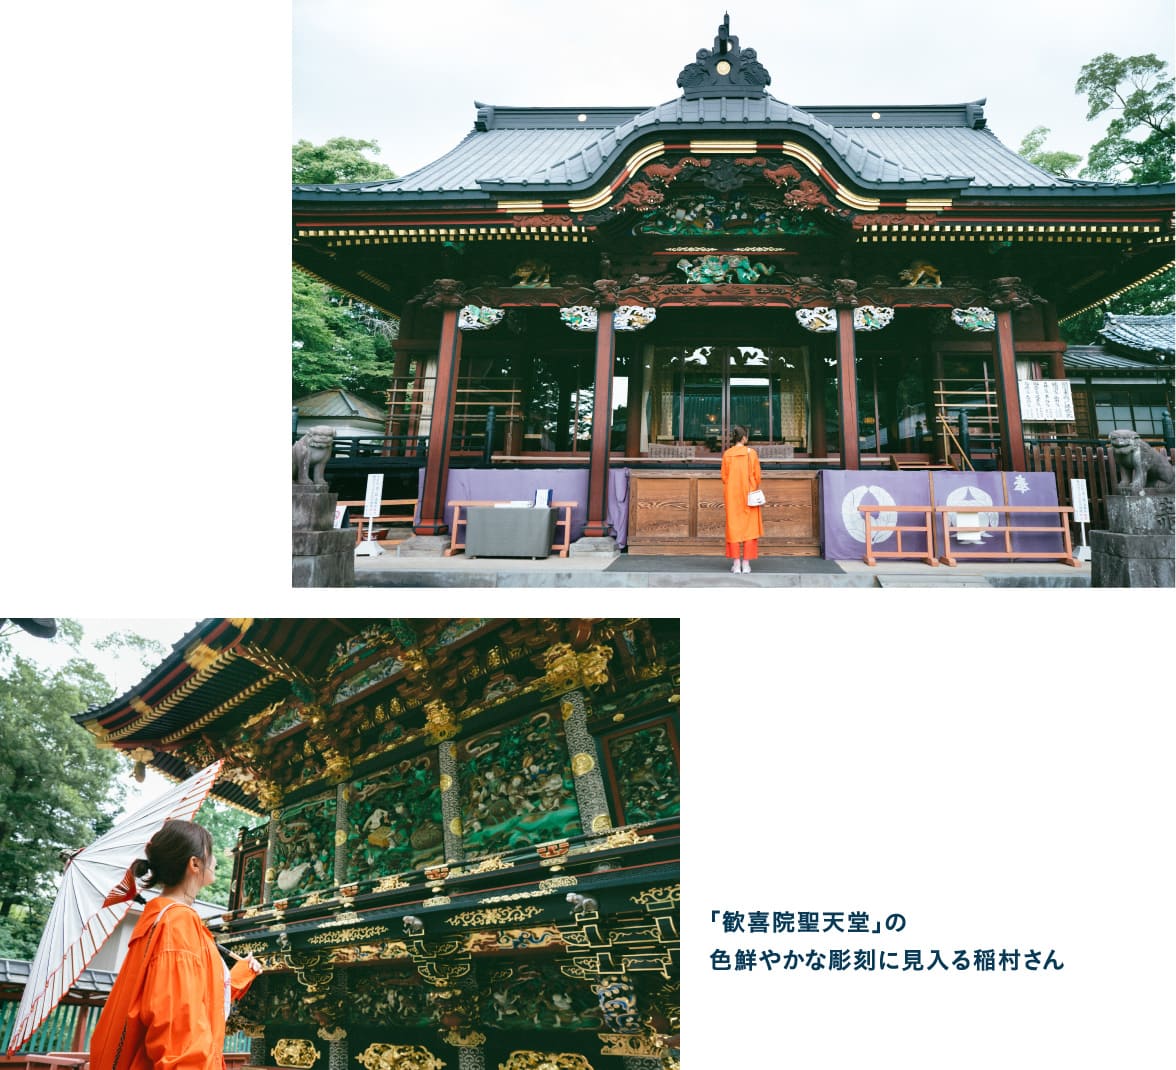 「歓喜院聖天堂」の色鮮やかな彫刻に見入る稲村さん